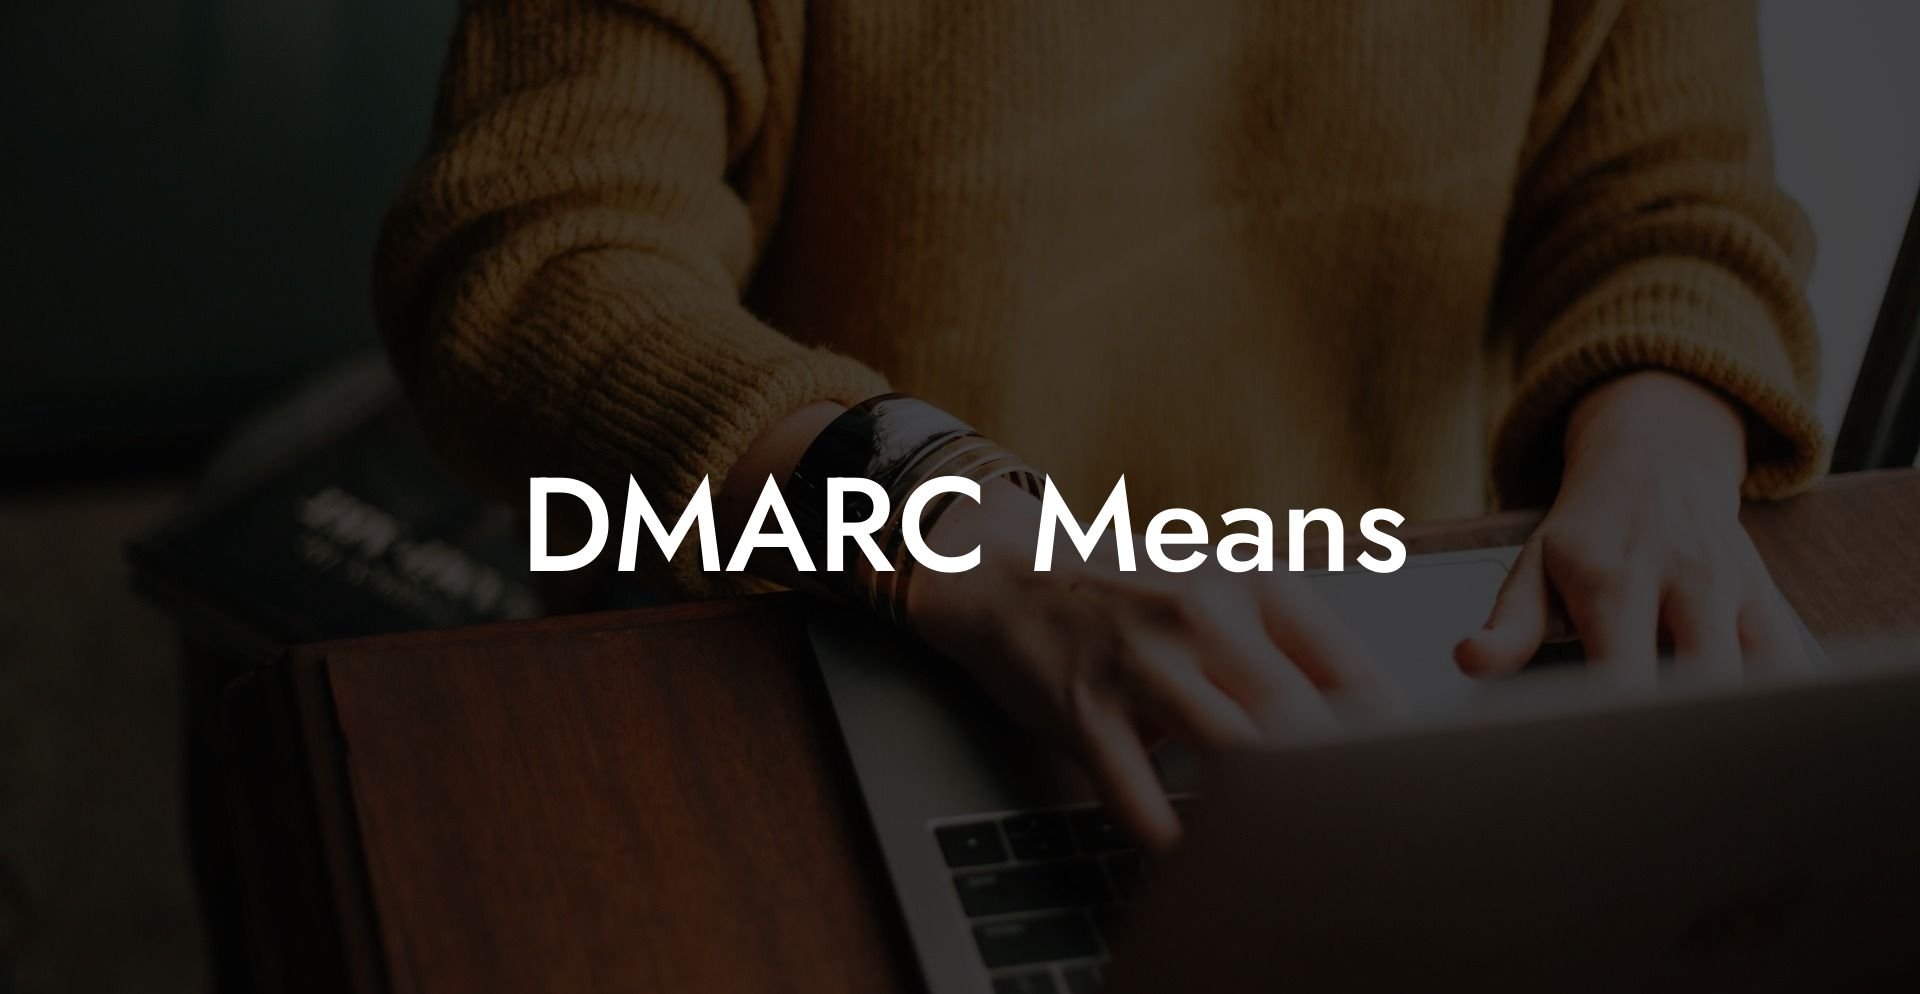 DMARC Means